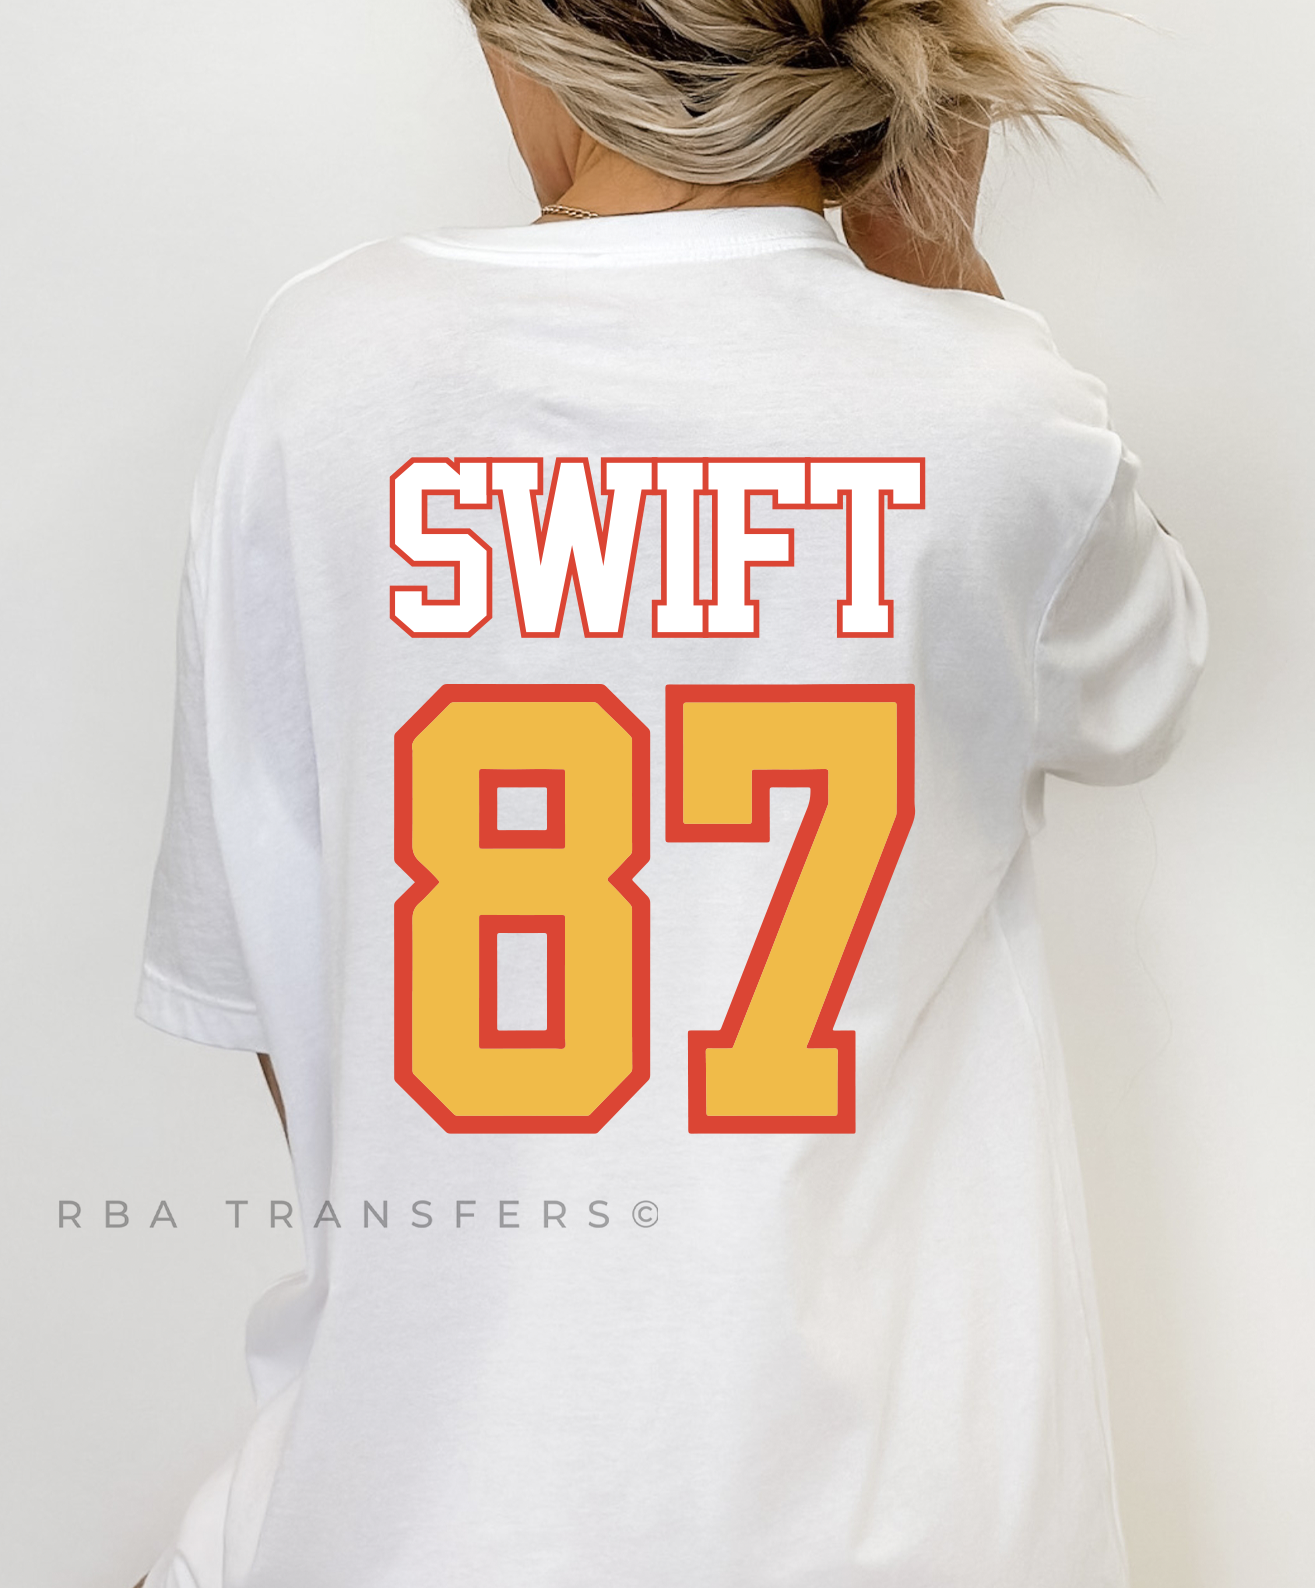 Swift 87 Full Color Transfer